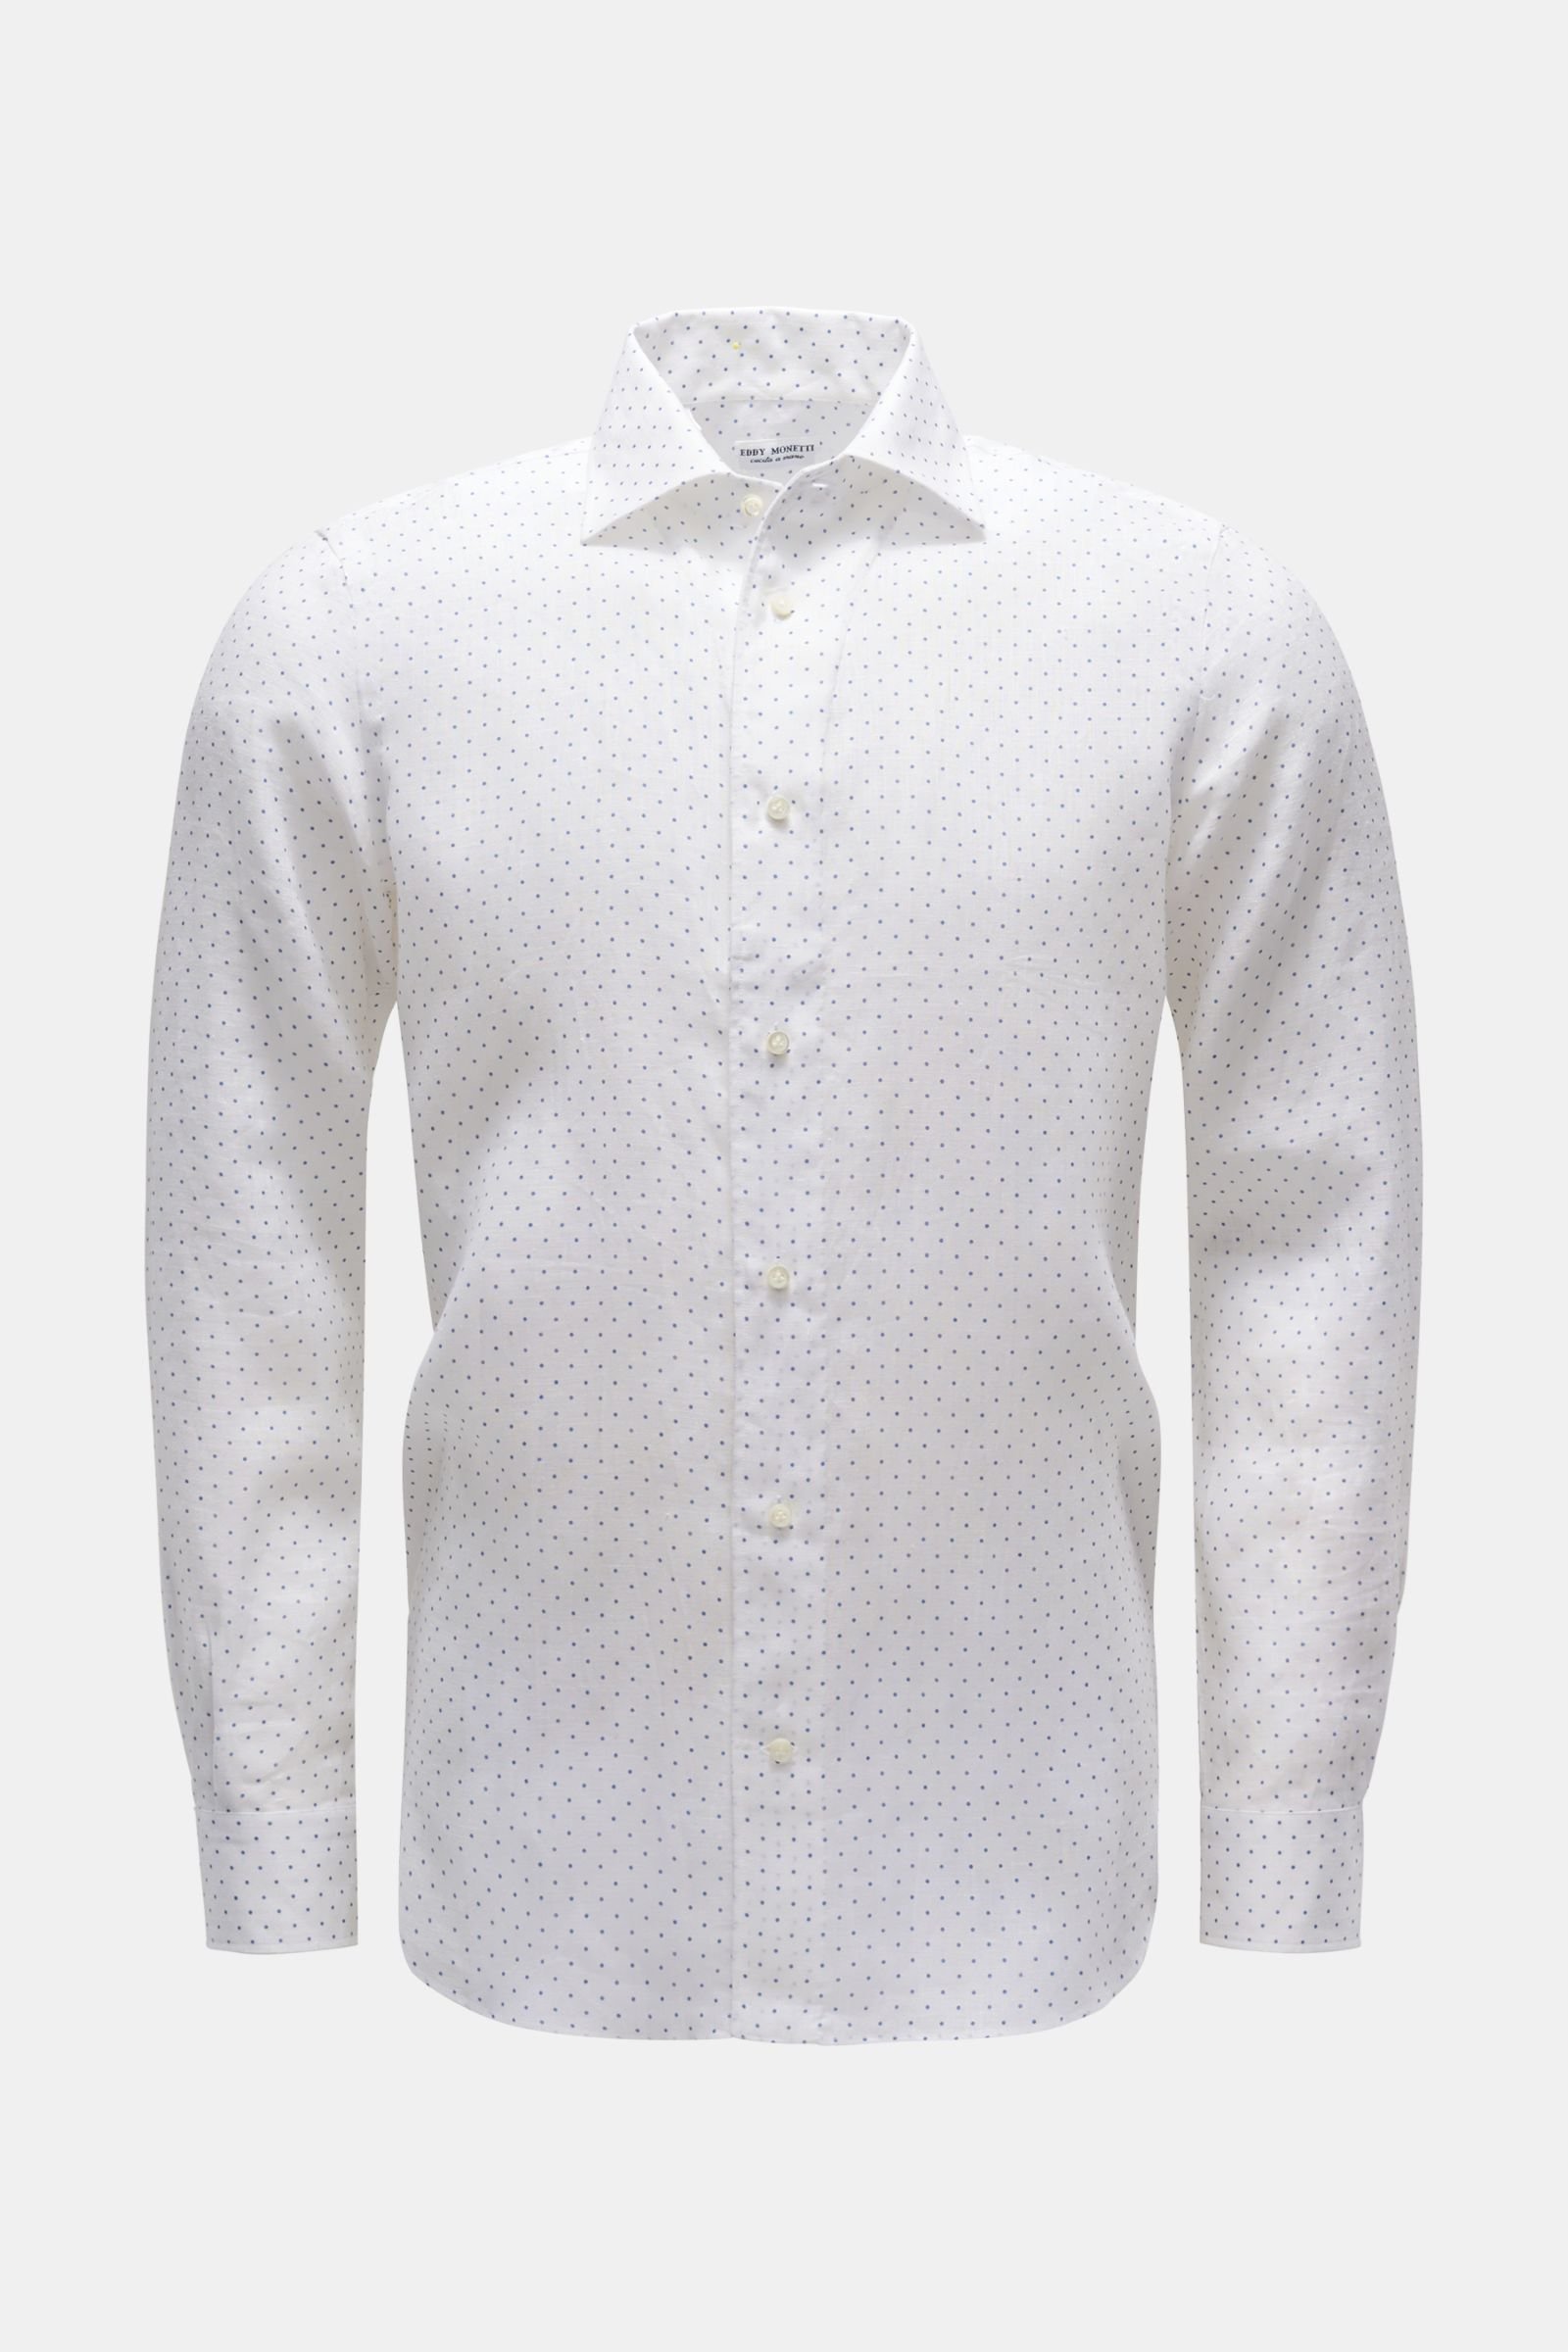 Linen shirt Kent collar white/grey-blue dotted